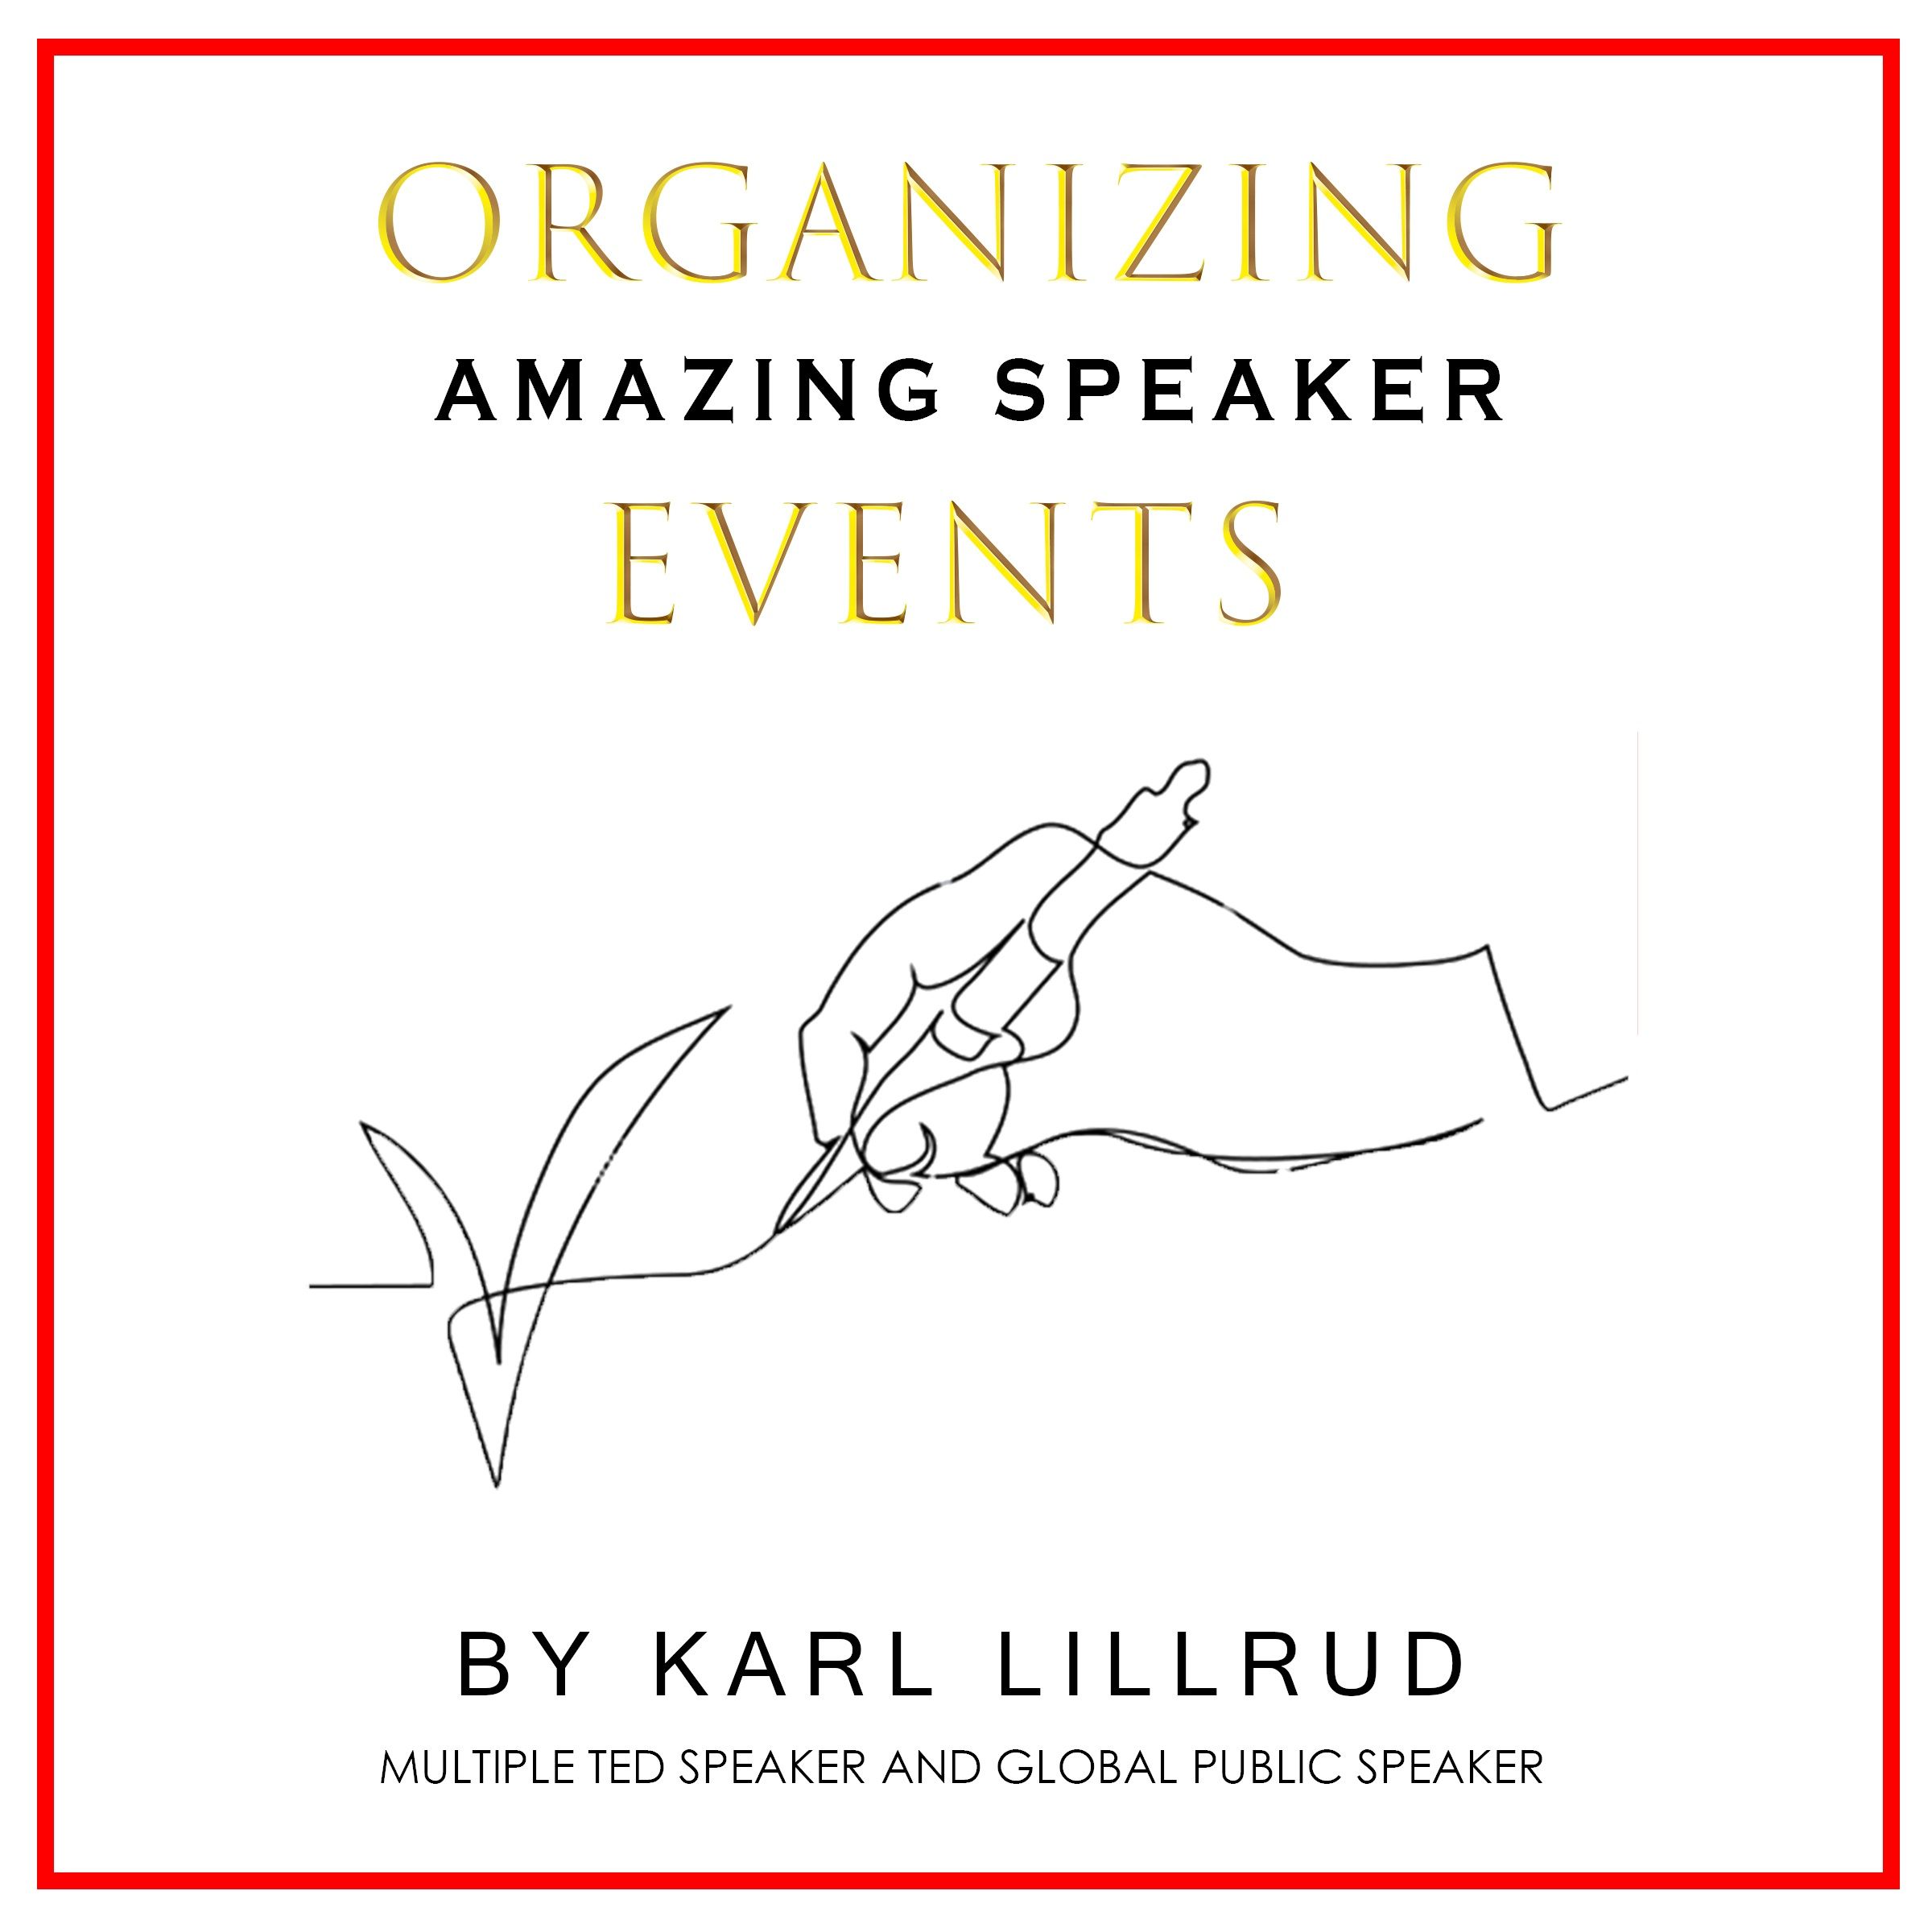 Organizing amazing speaker events, e-bog af Karl Lillrud